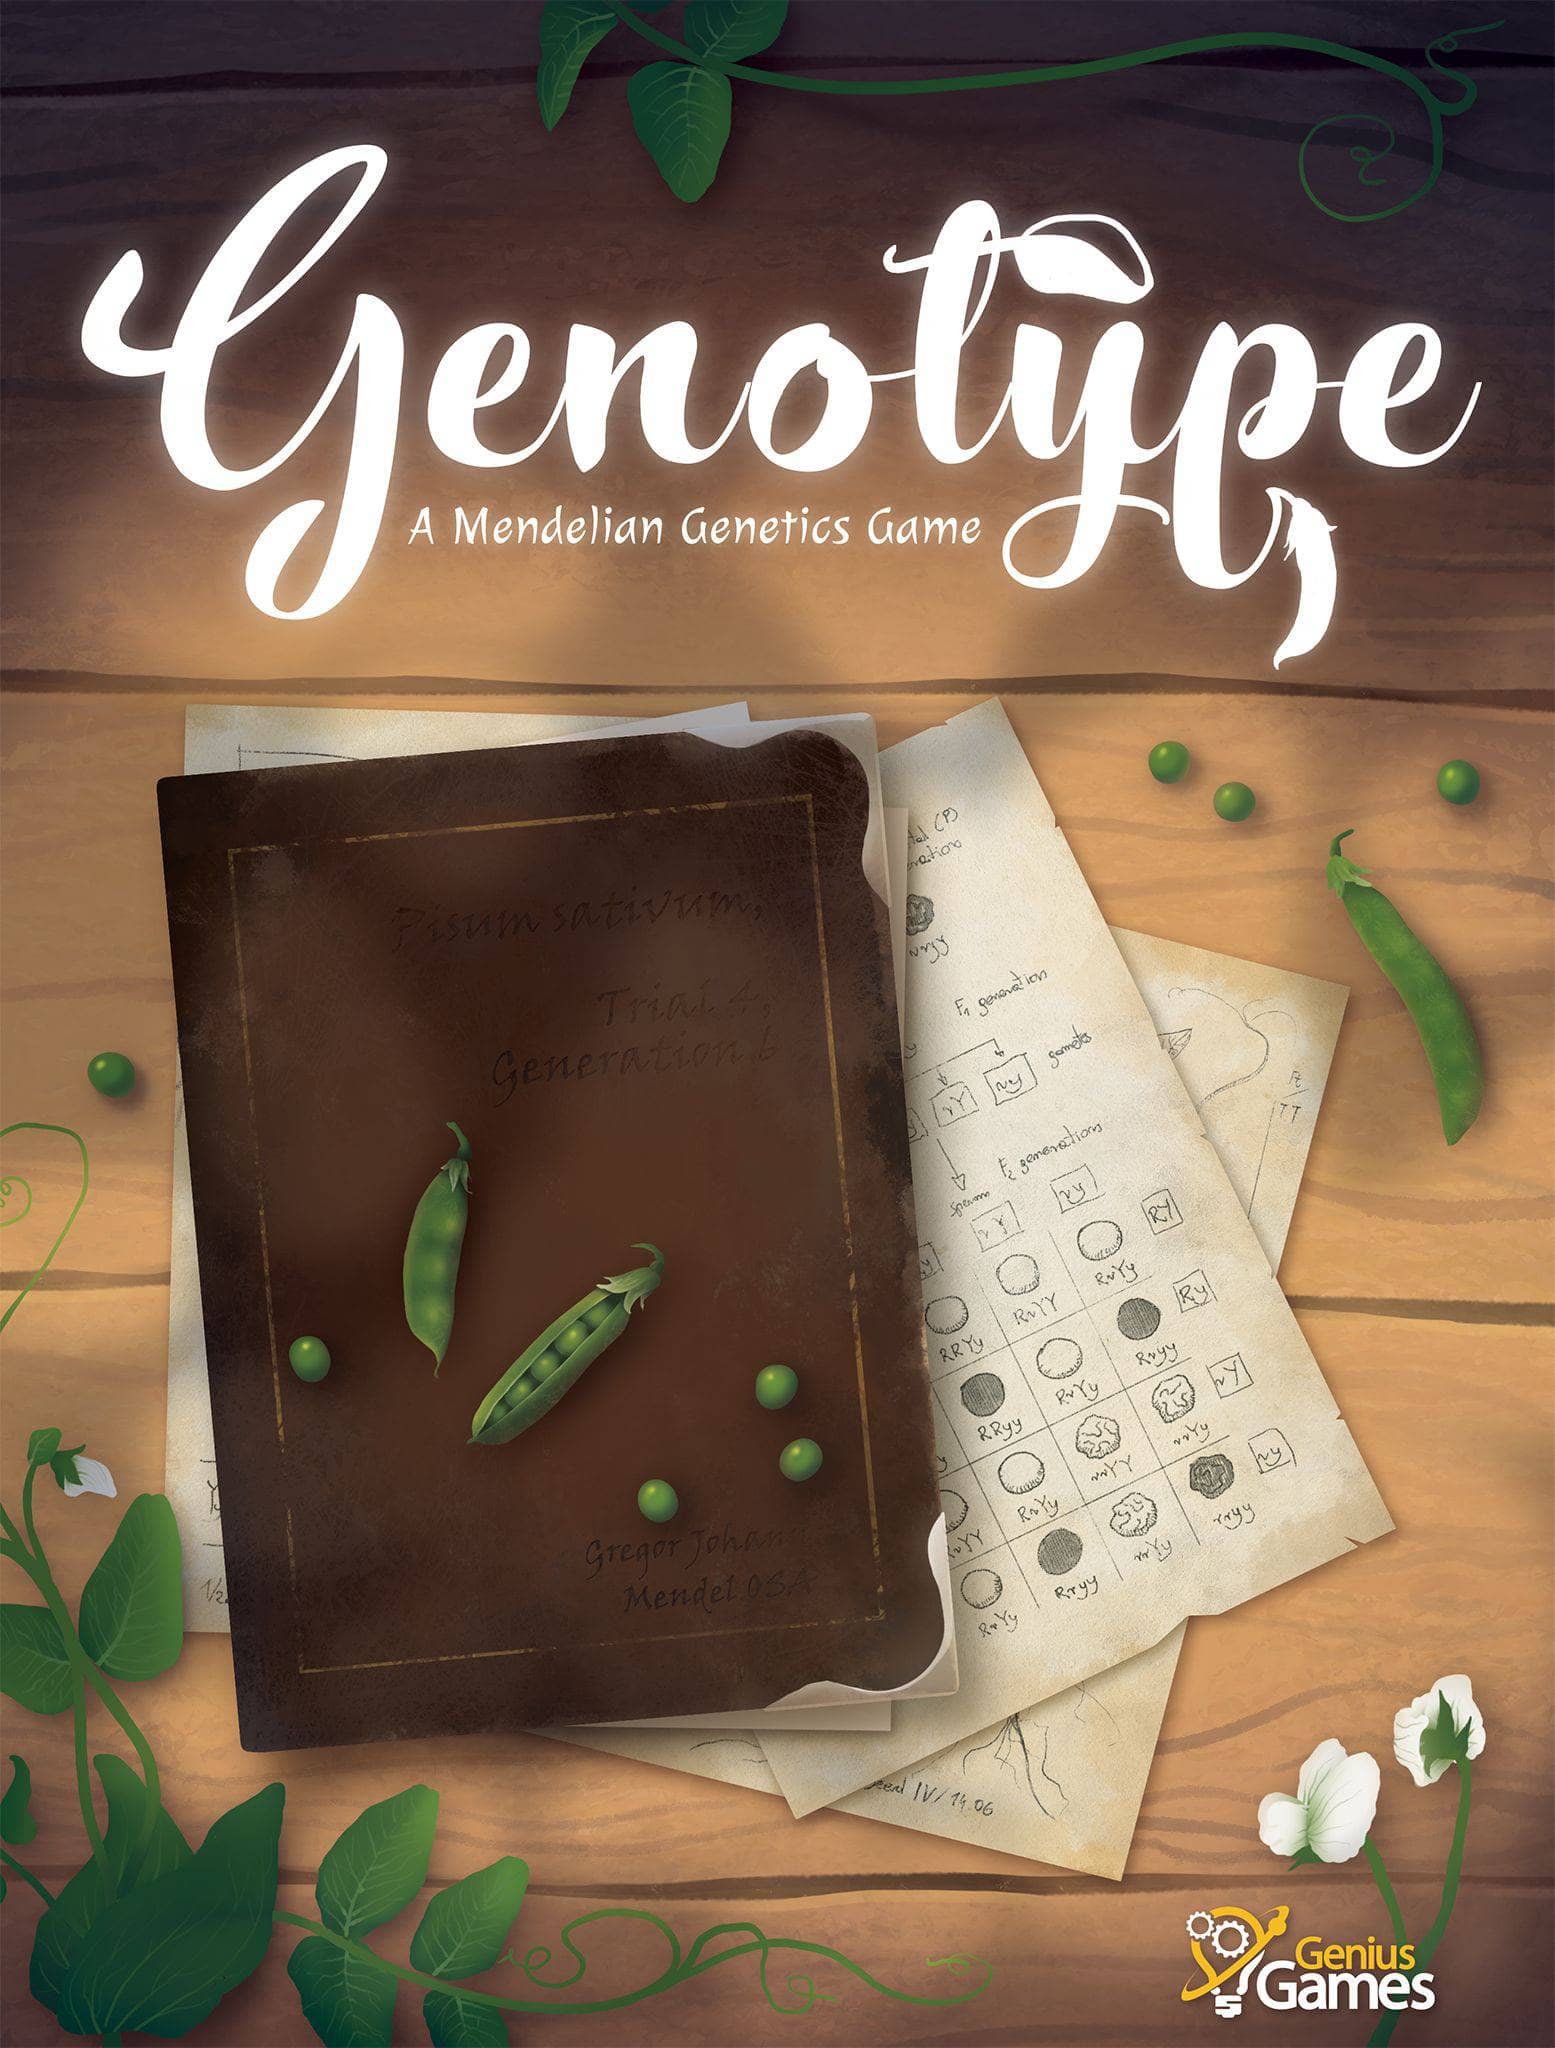 גנוטיפ: חבילת המהדורה של אספן גנטיקה של מנדליאן משחק (Kickstarter Special)